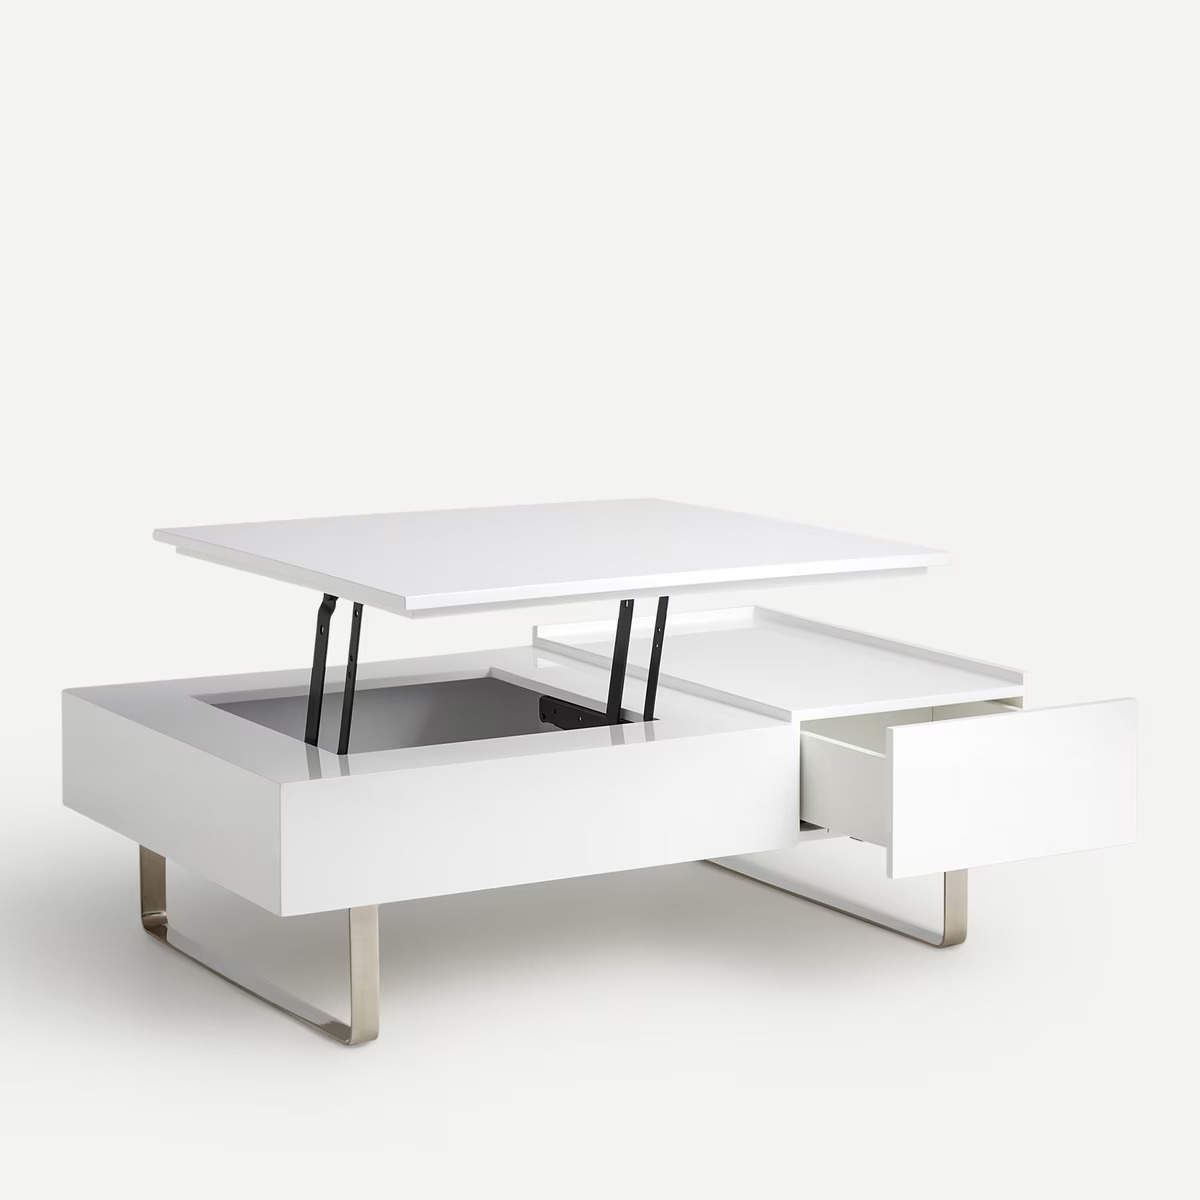 Una mesa de centro elevable de color blanco.